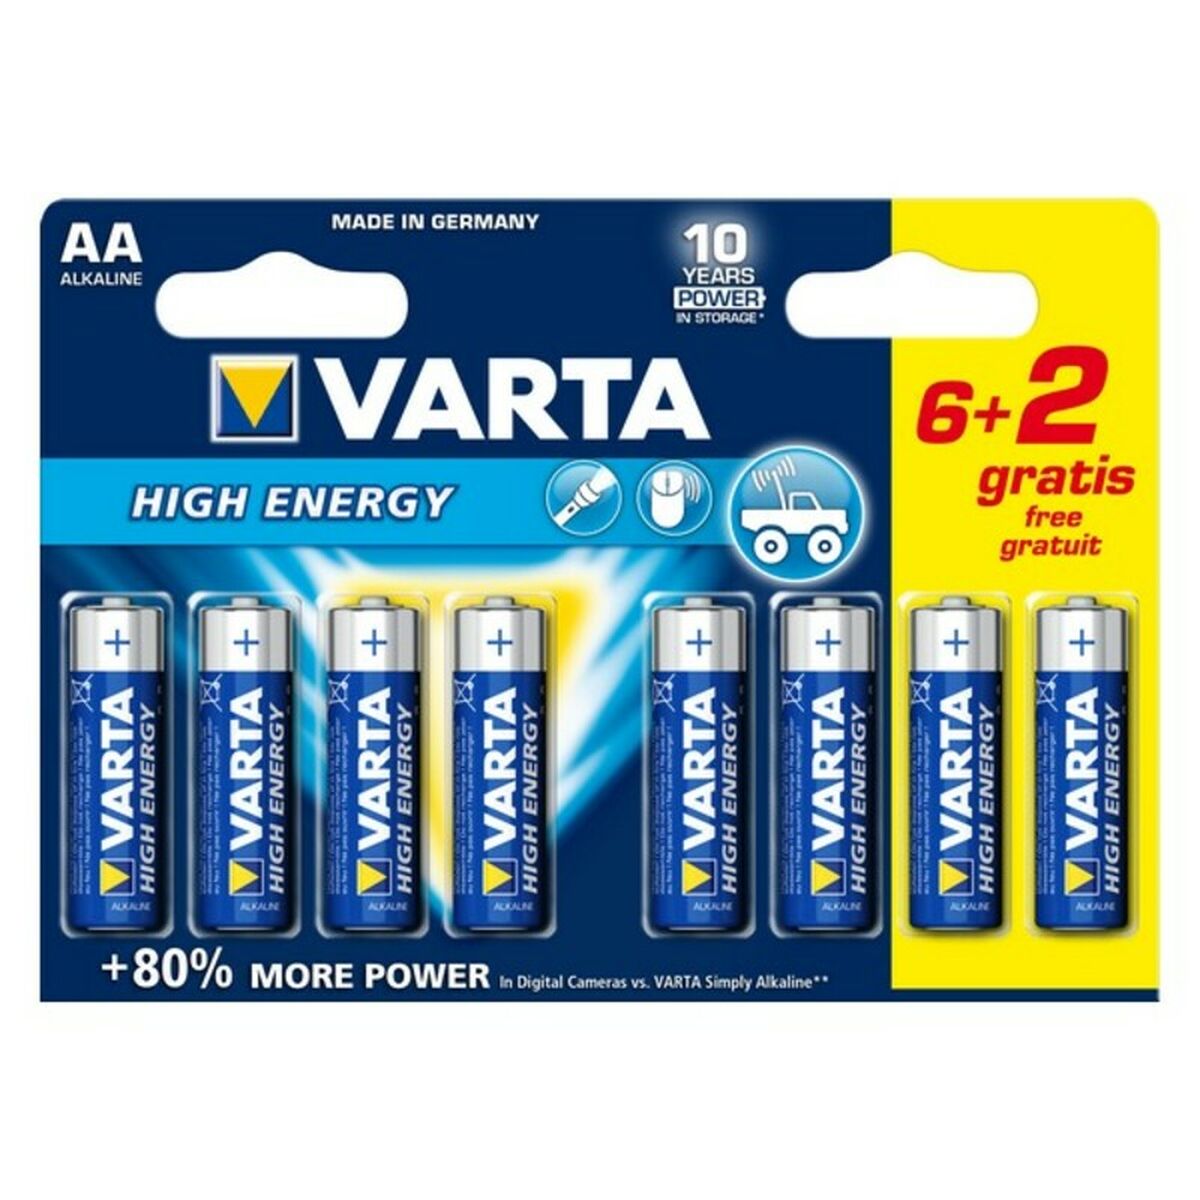 VARTA-Pila alcalina LongLife Power LR06 AA (Blíster 6 pilas + 2)